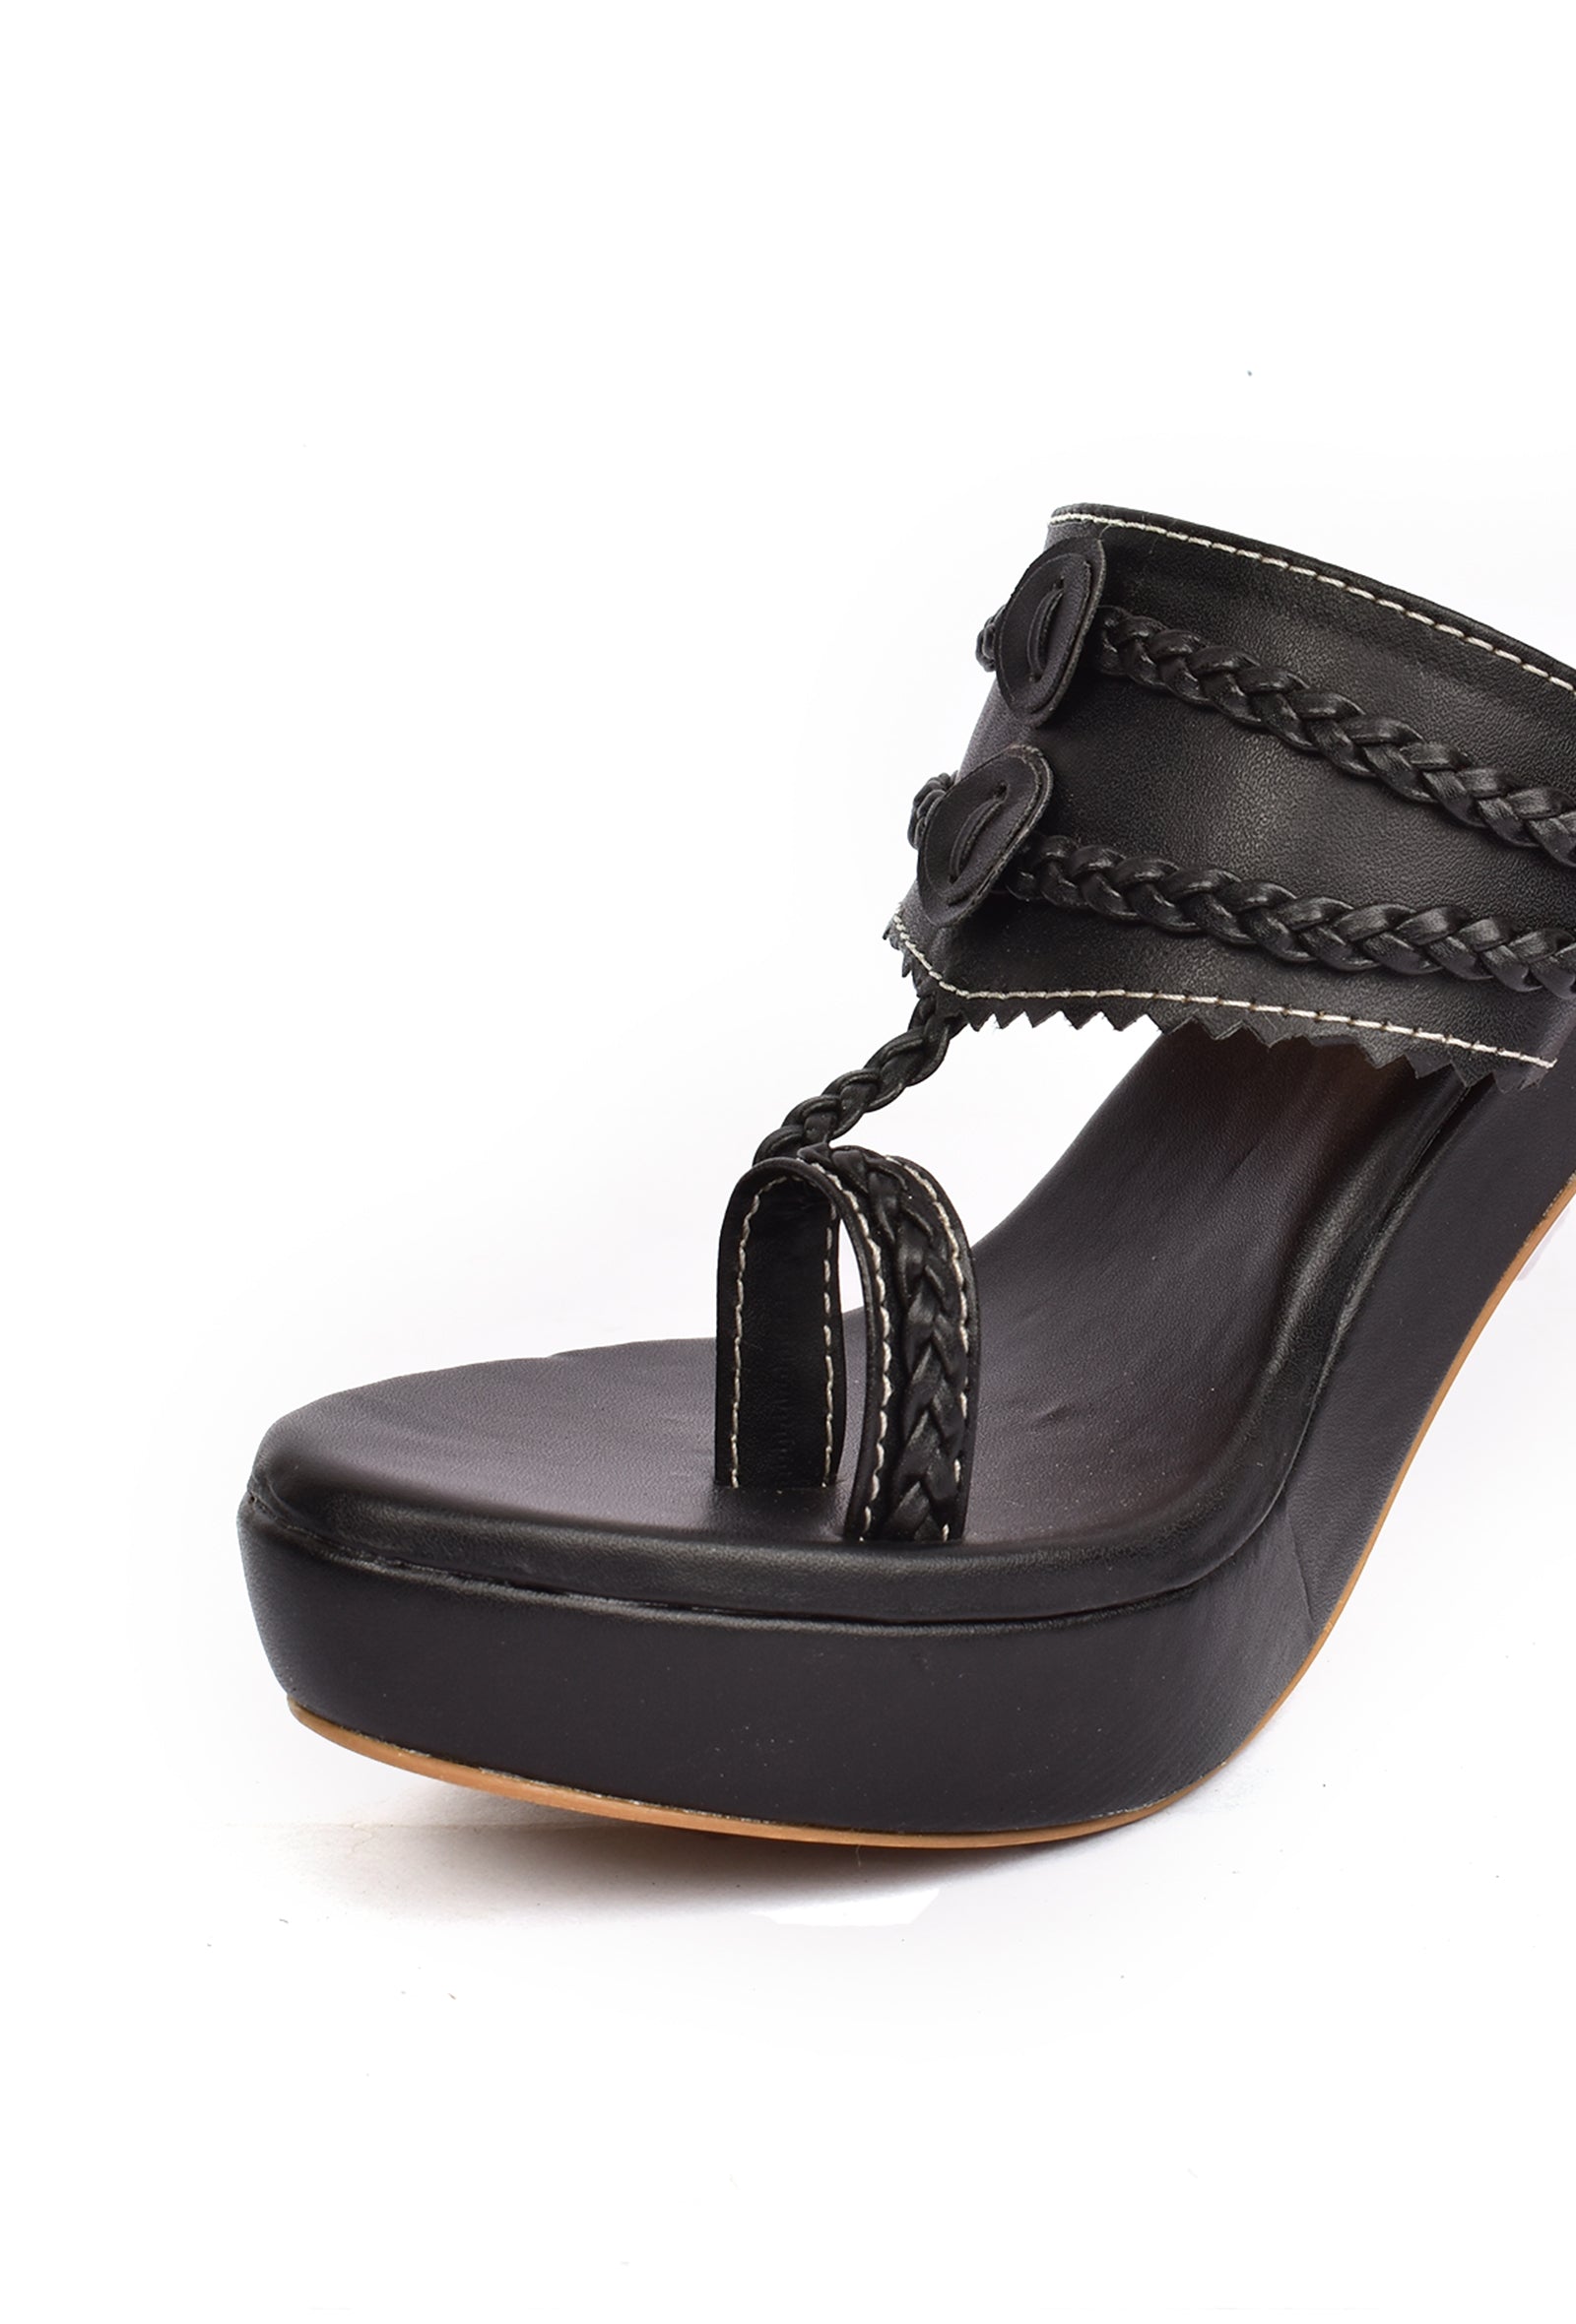 Classic Black Vegan Leather Kolhapuri Heels